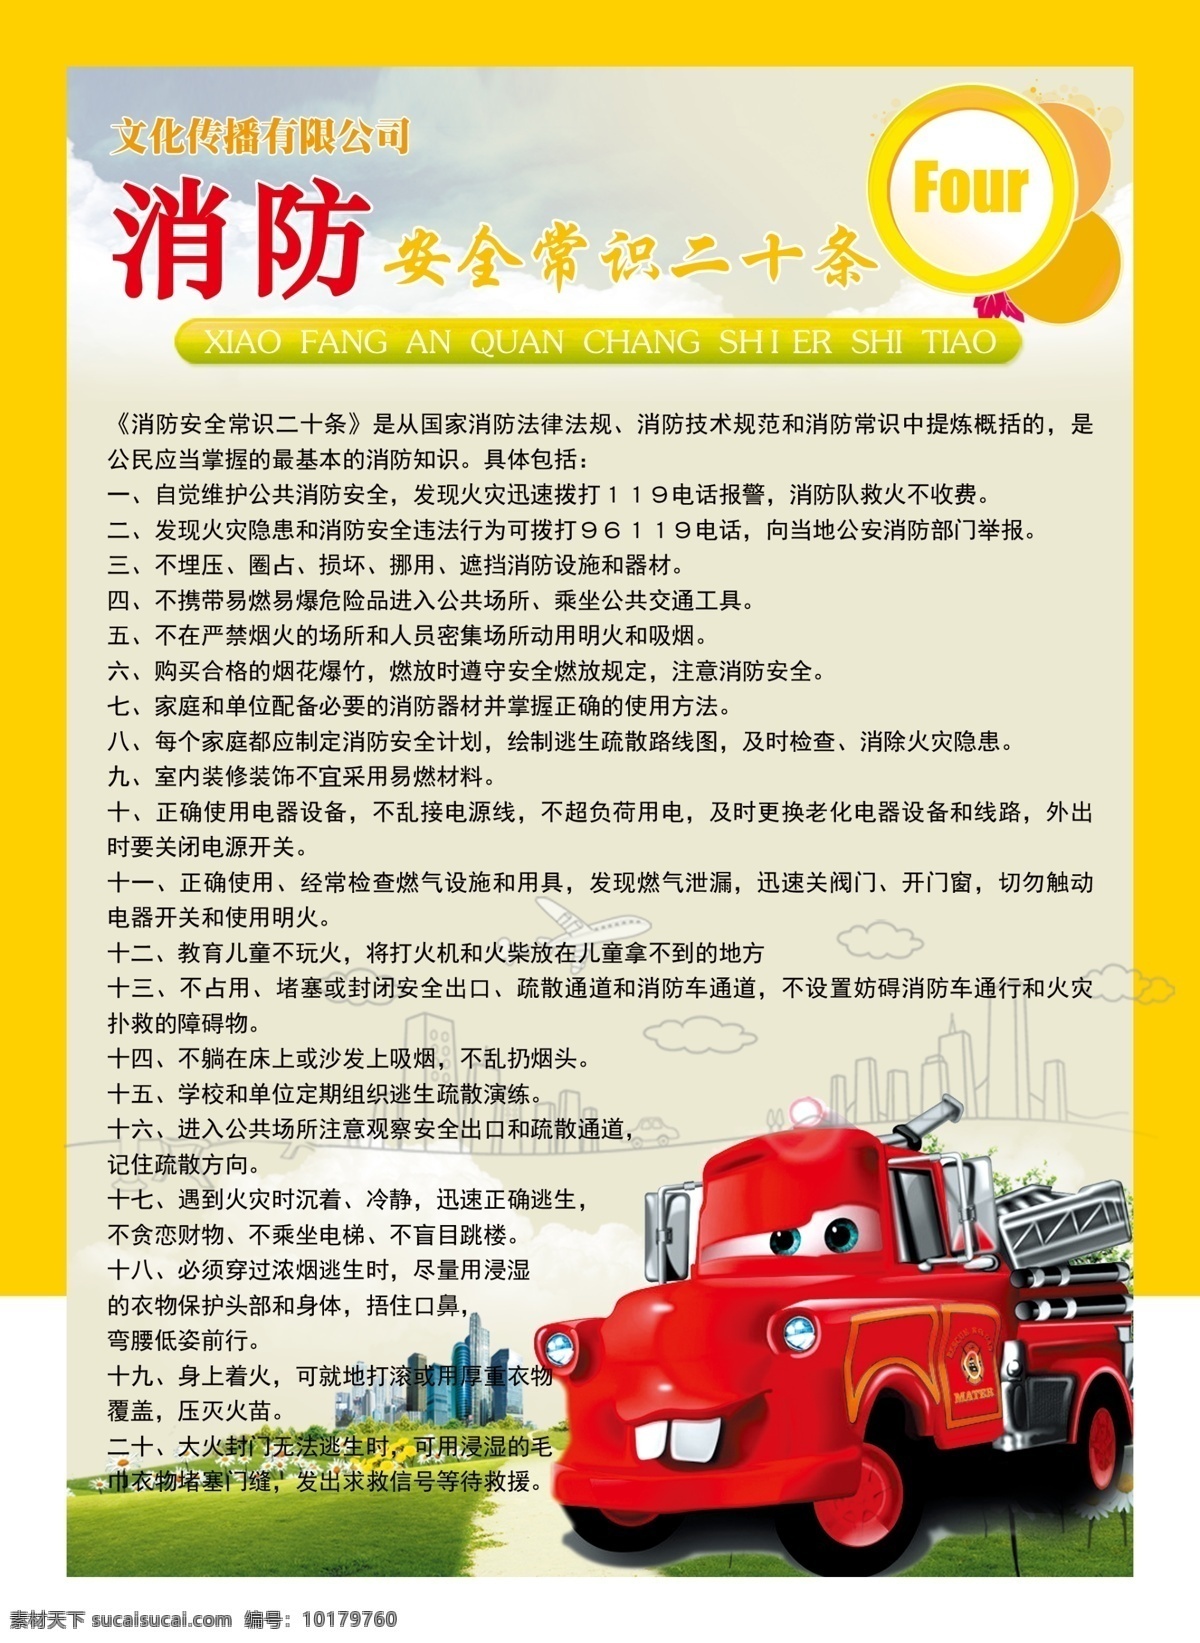 消防 安全 常识 二 十 条 黄色 红色 卡哇伊 萌萌哒 卡通 少儿 幼儿园 海报 儿童 白色